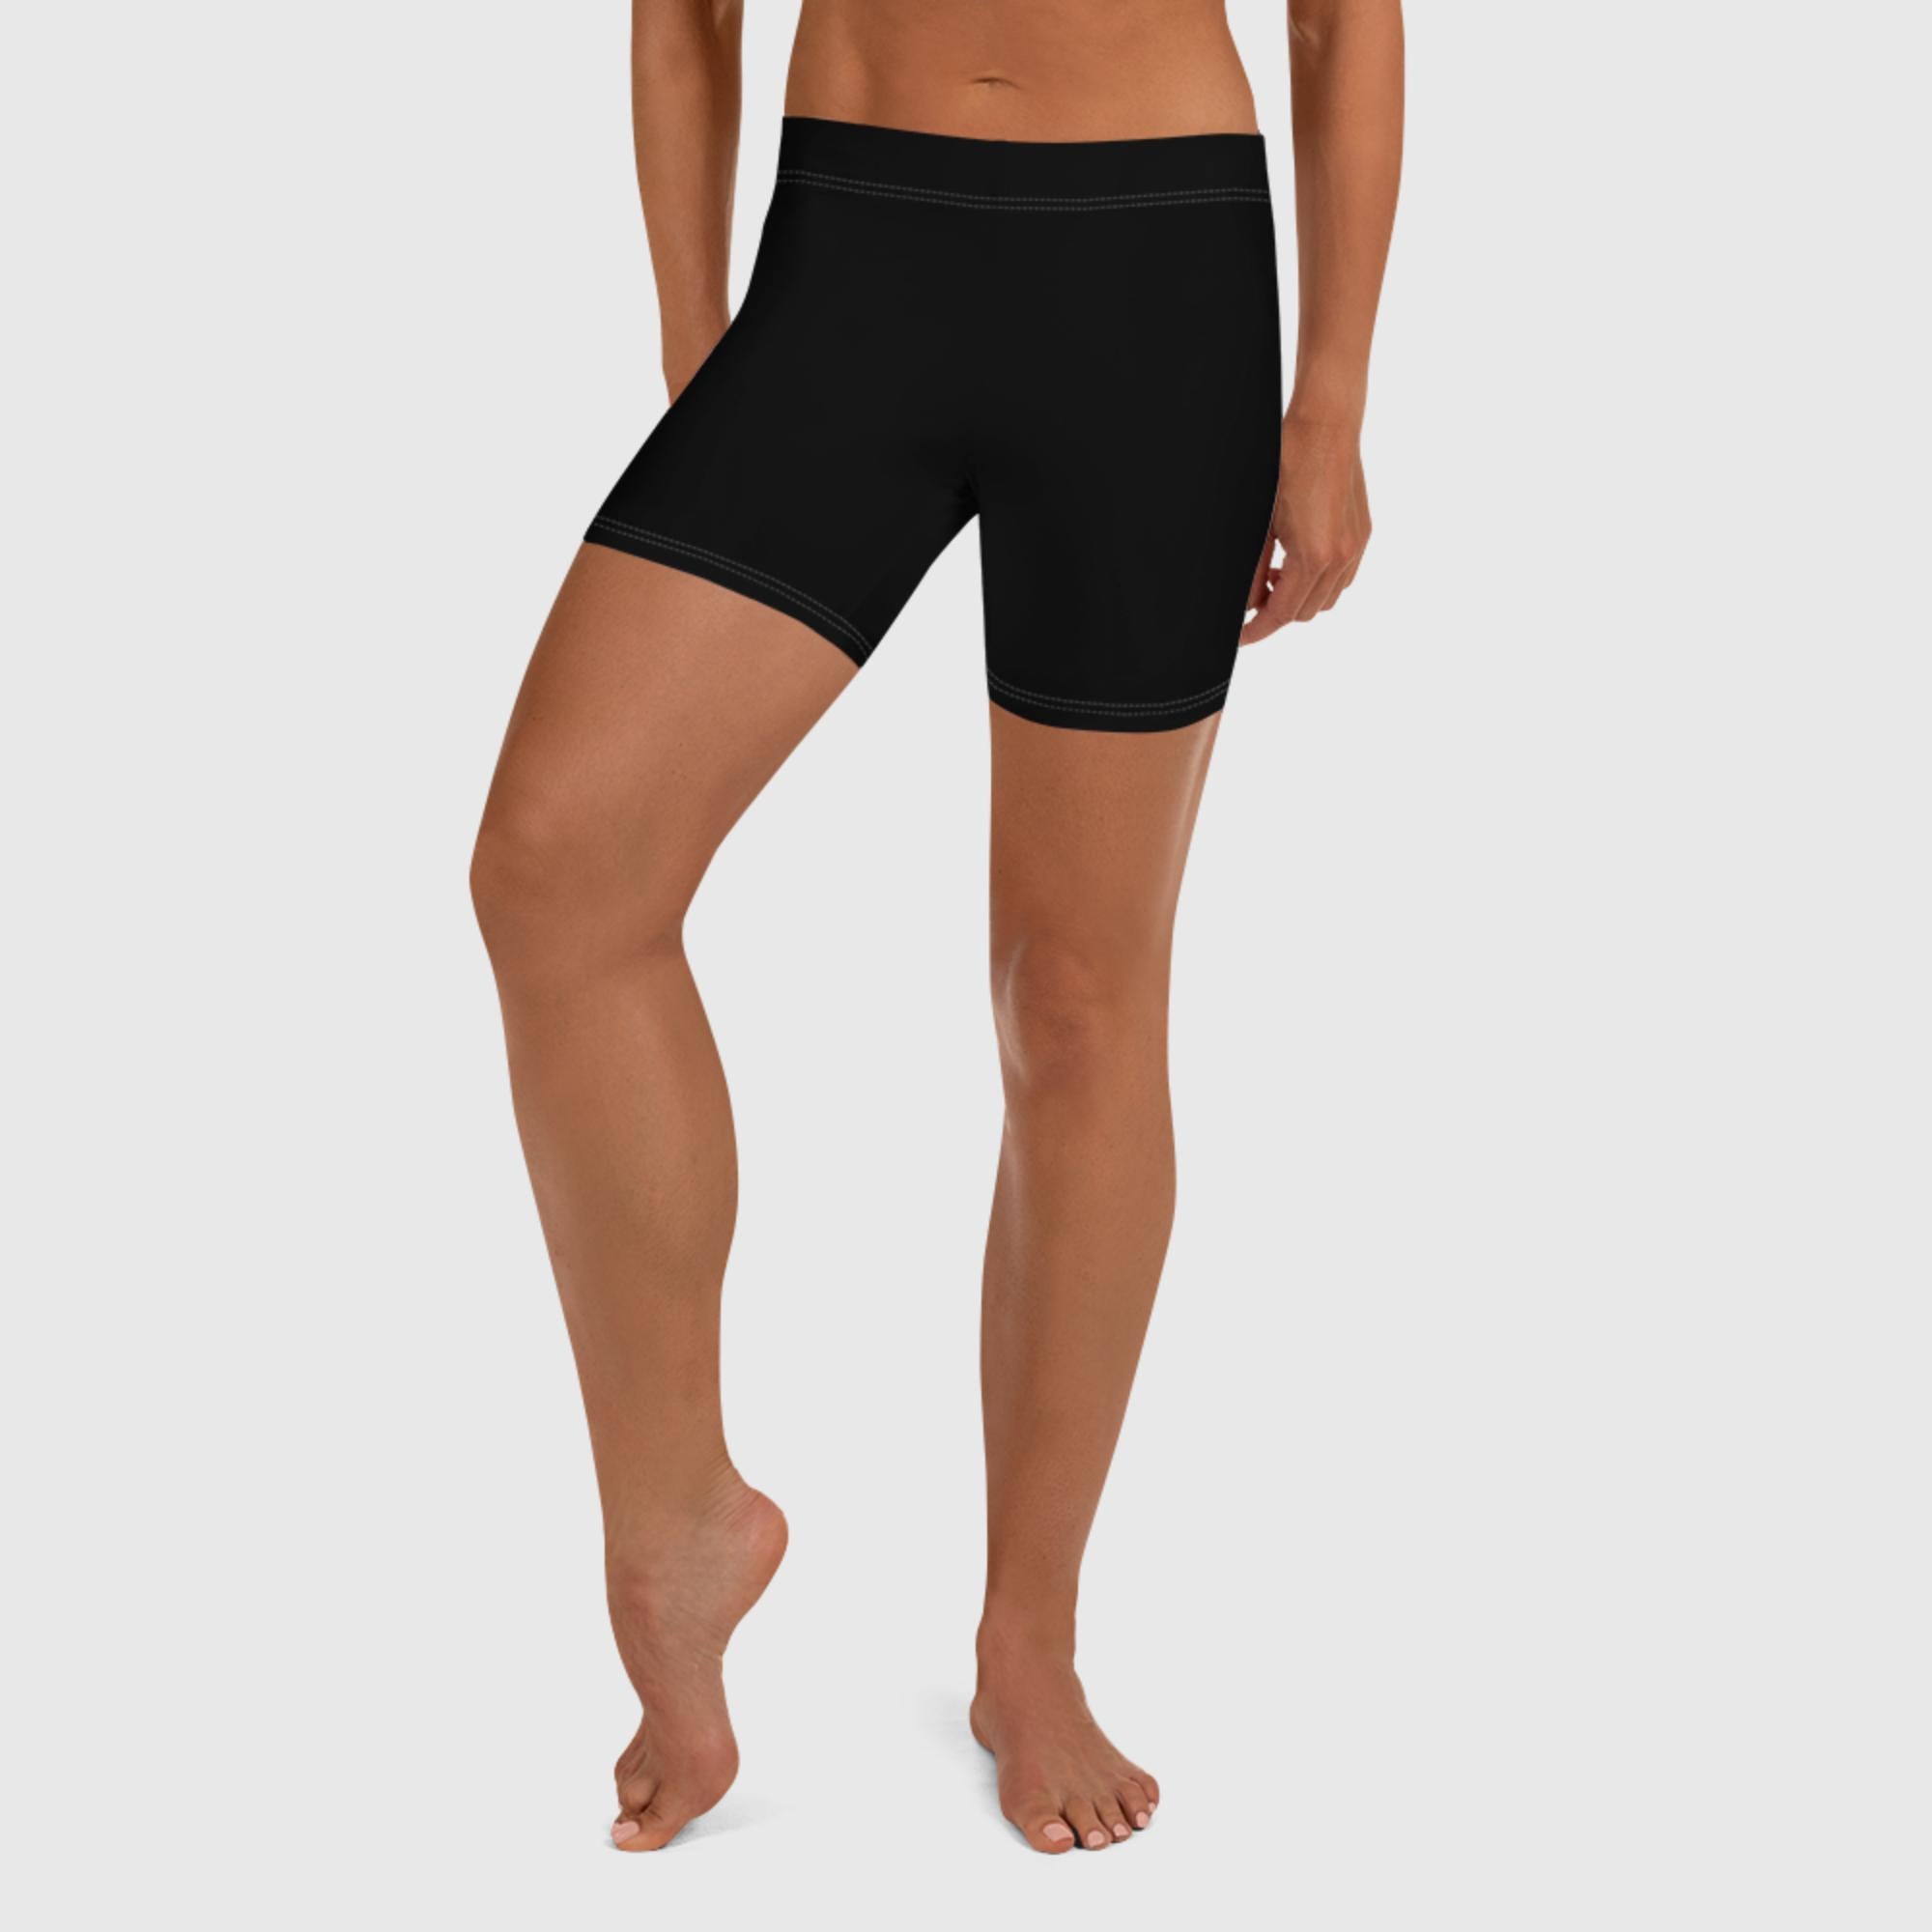 Women's Shorts - Black - Sunset Harbor Clothing